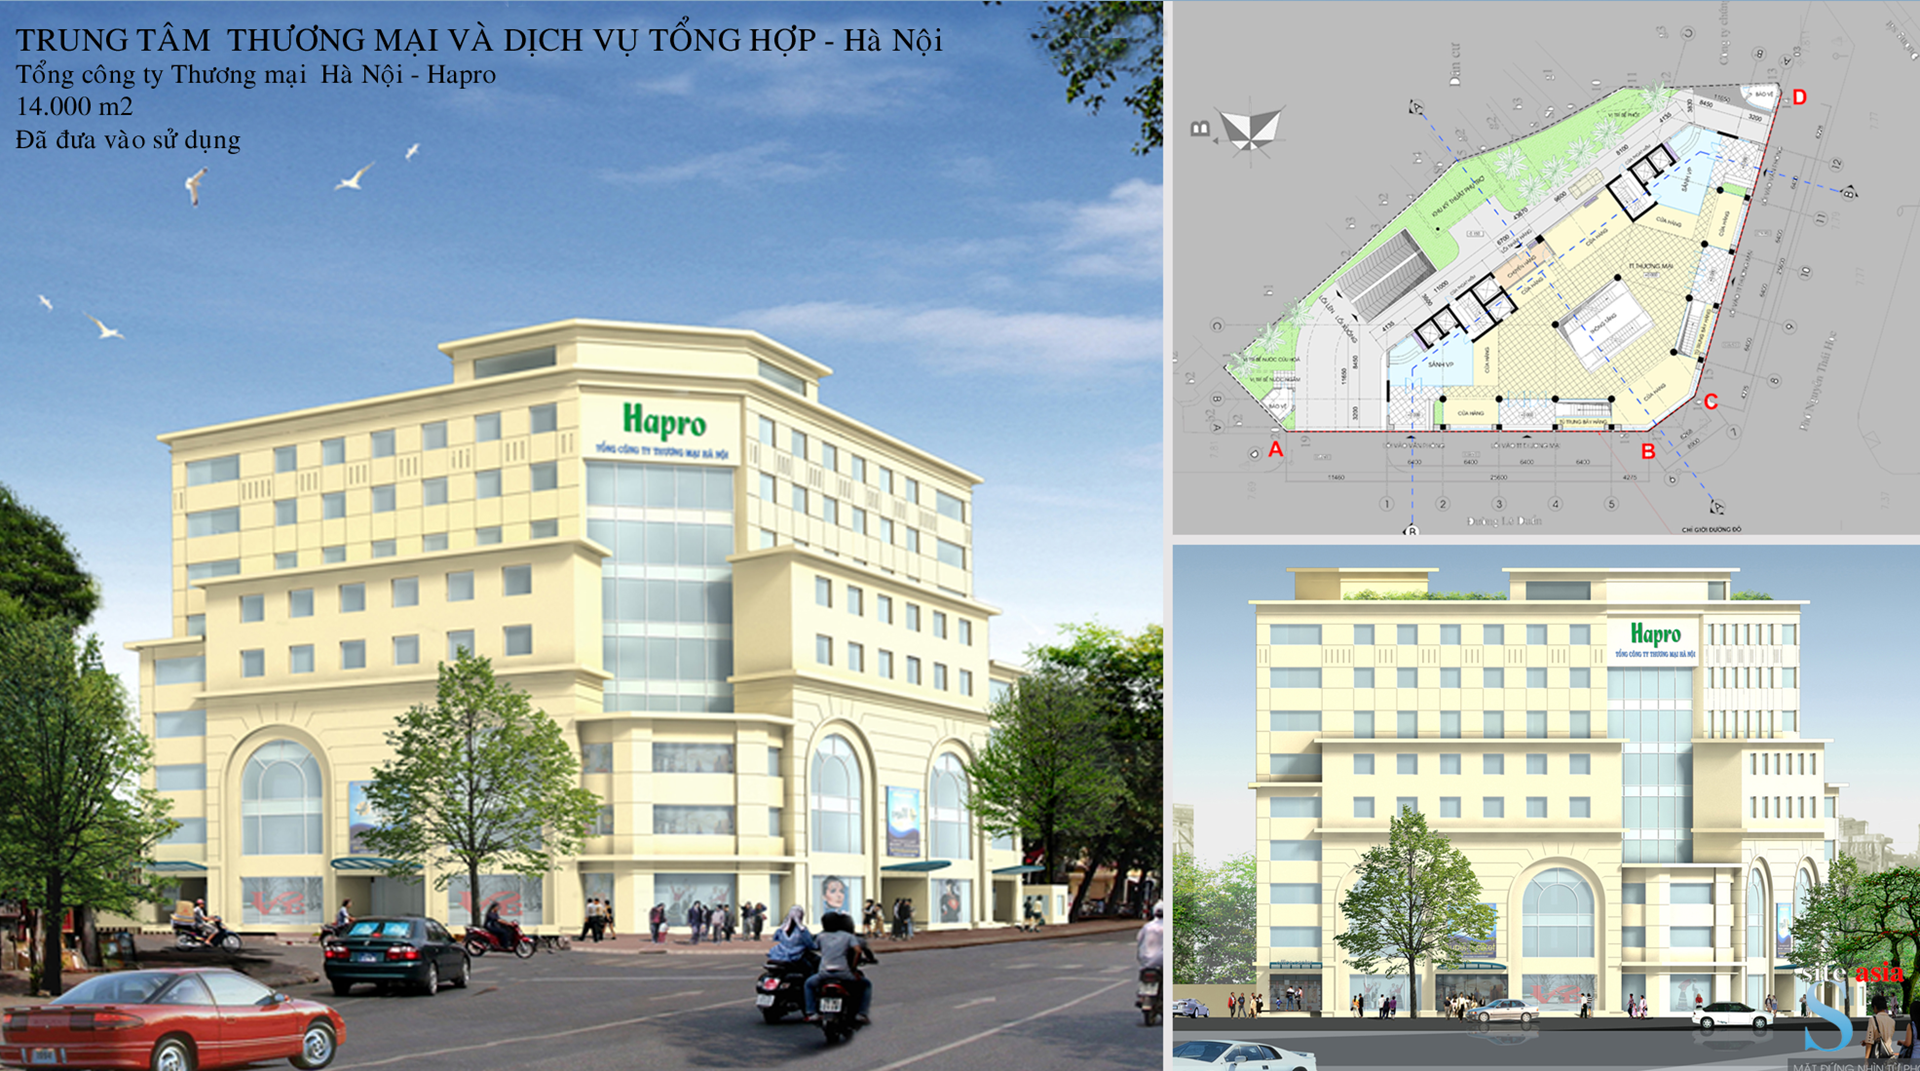 Hapro Commercial Center, Le Duan, Ha Noi